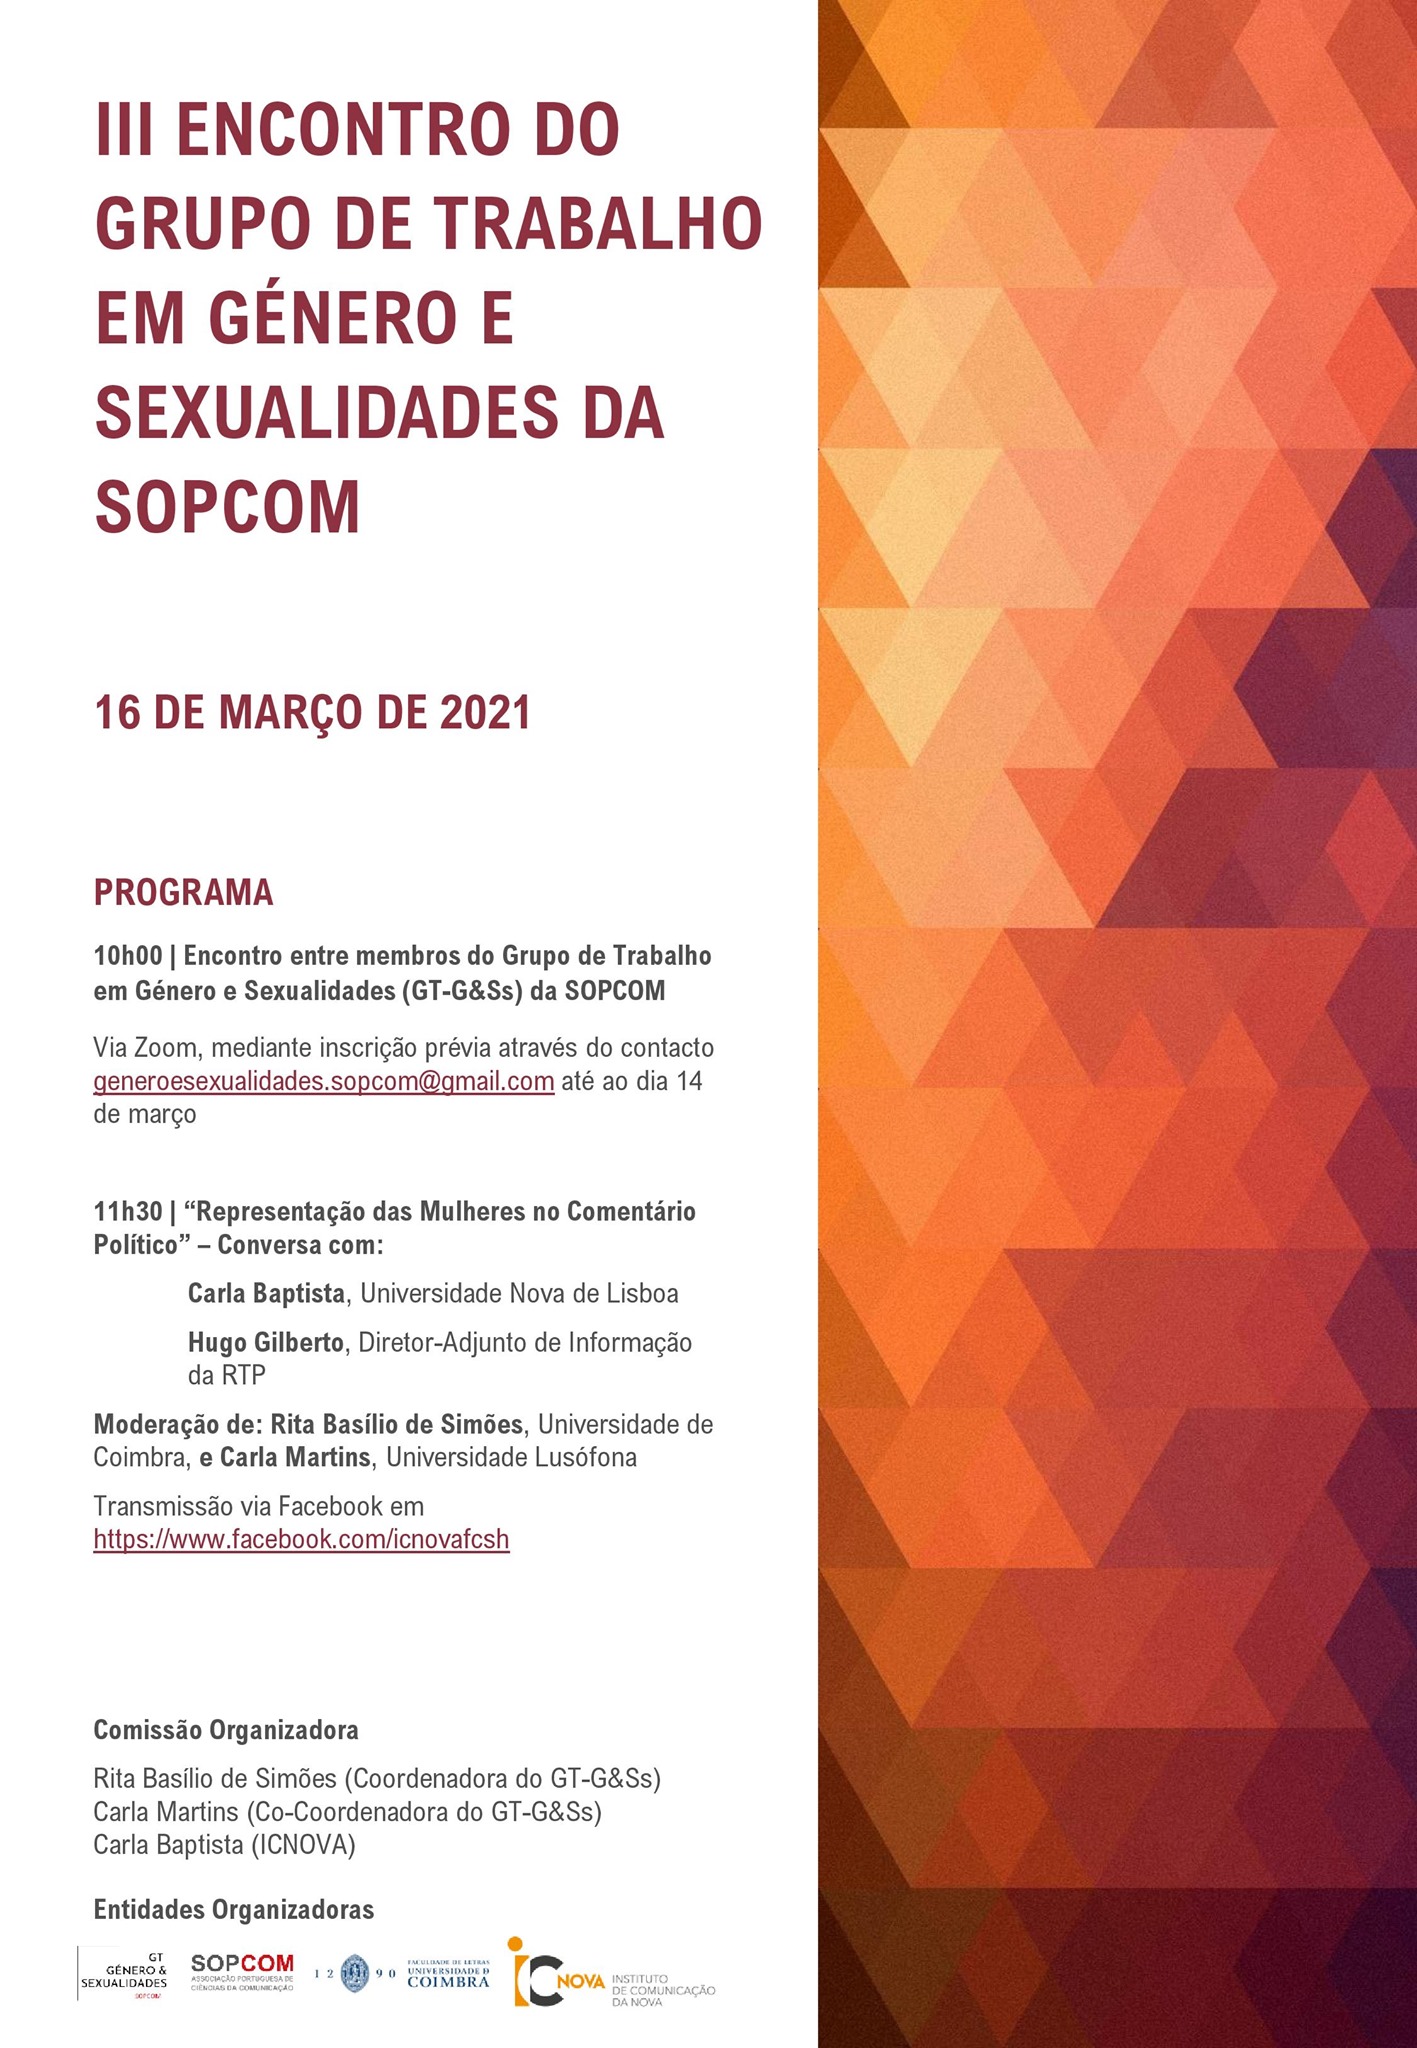 III Encontro do Grupo de Trabalho em Género e Sexualidades da SOPCOM